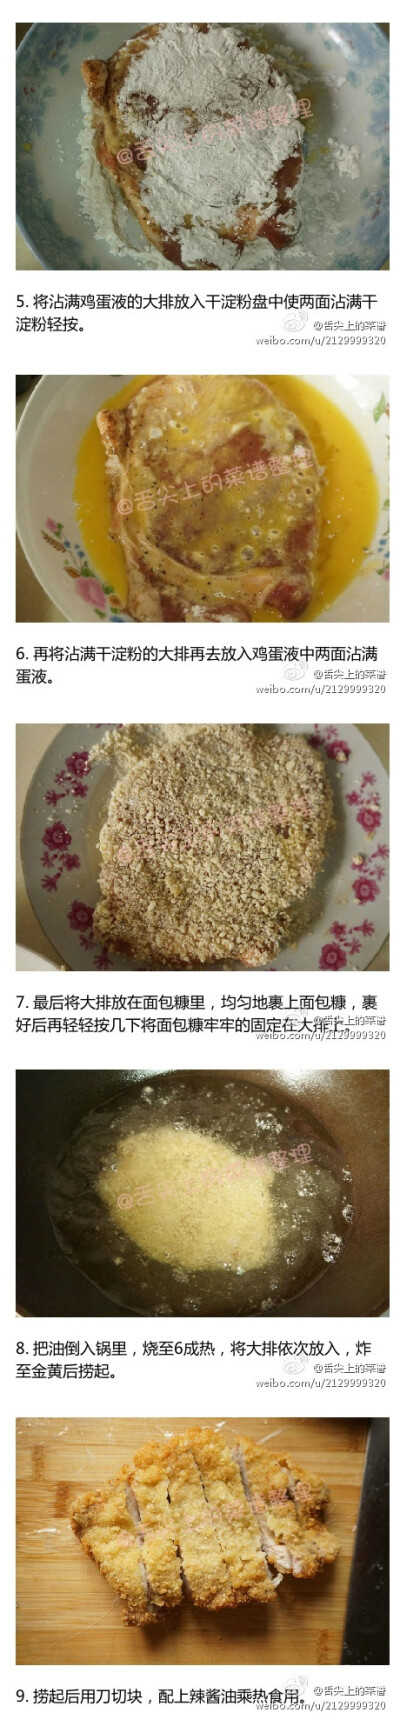 #猪扒菜谱2#跟着舌尖一起吃上海炸猪排！上海的炸猪排，是一定要配一点辣酱油才好吃的哦。